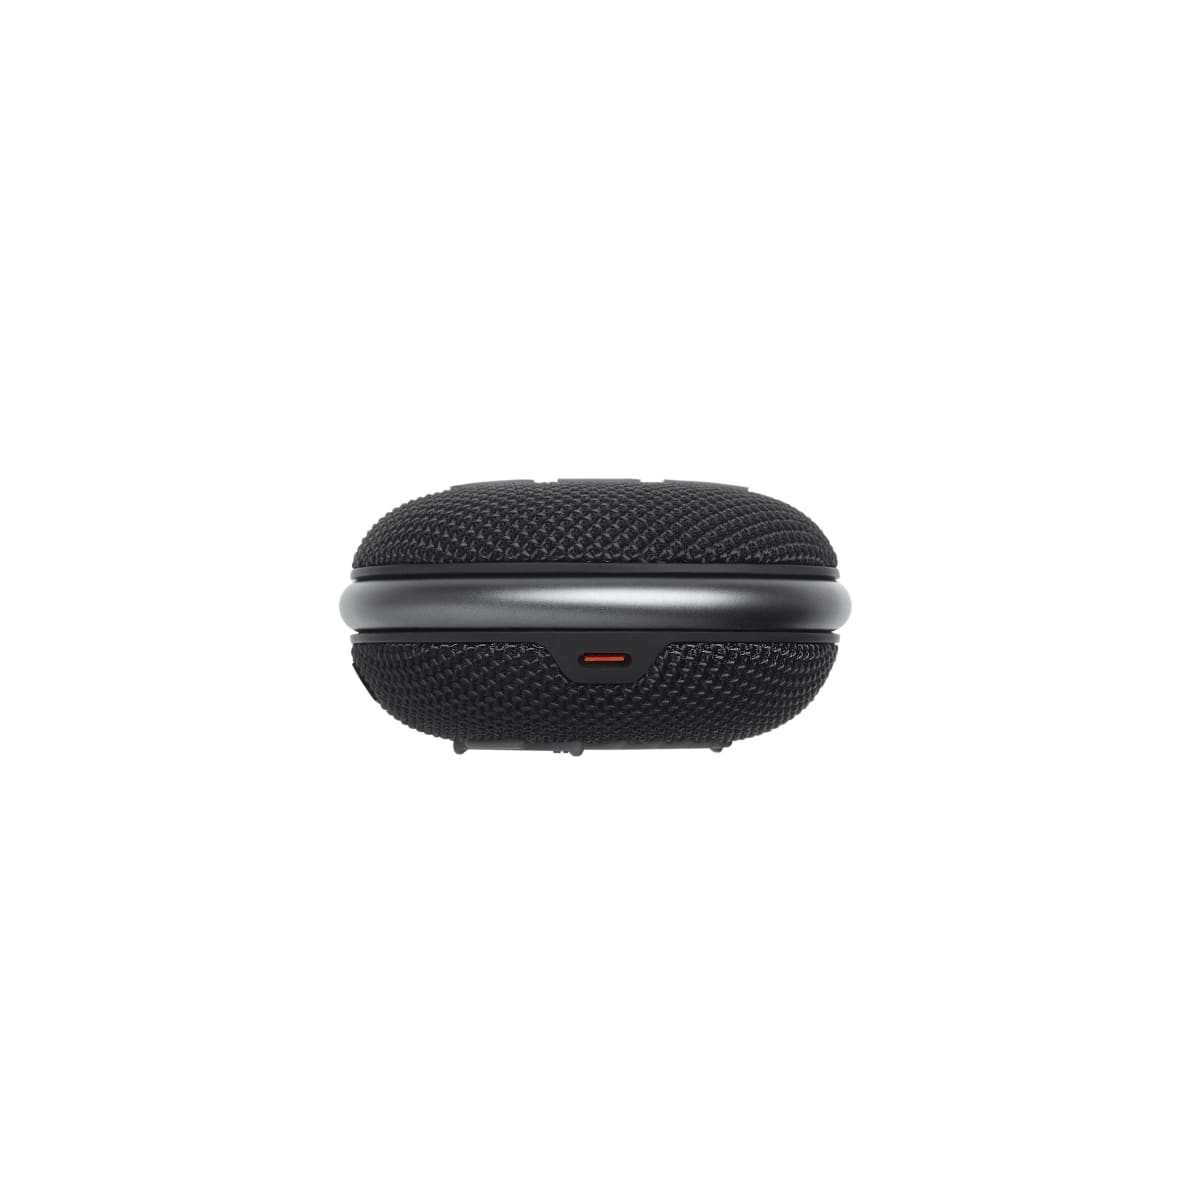 JBL CLIP 4 Ultra-portable Waterproof Bluetooth Speaker